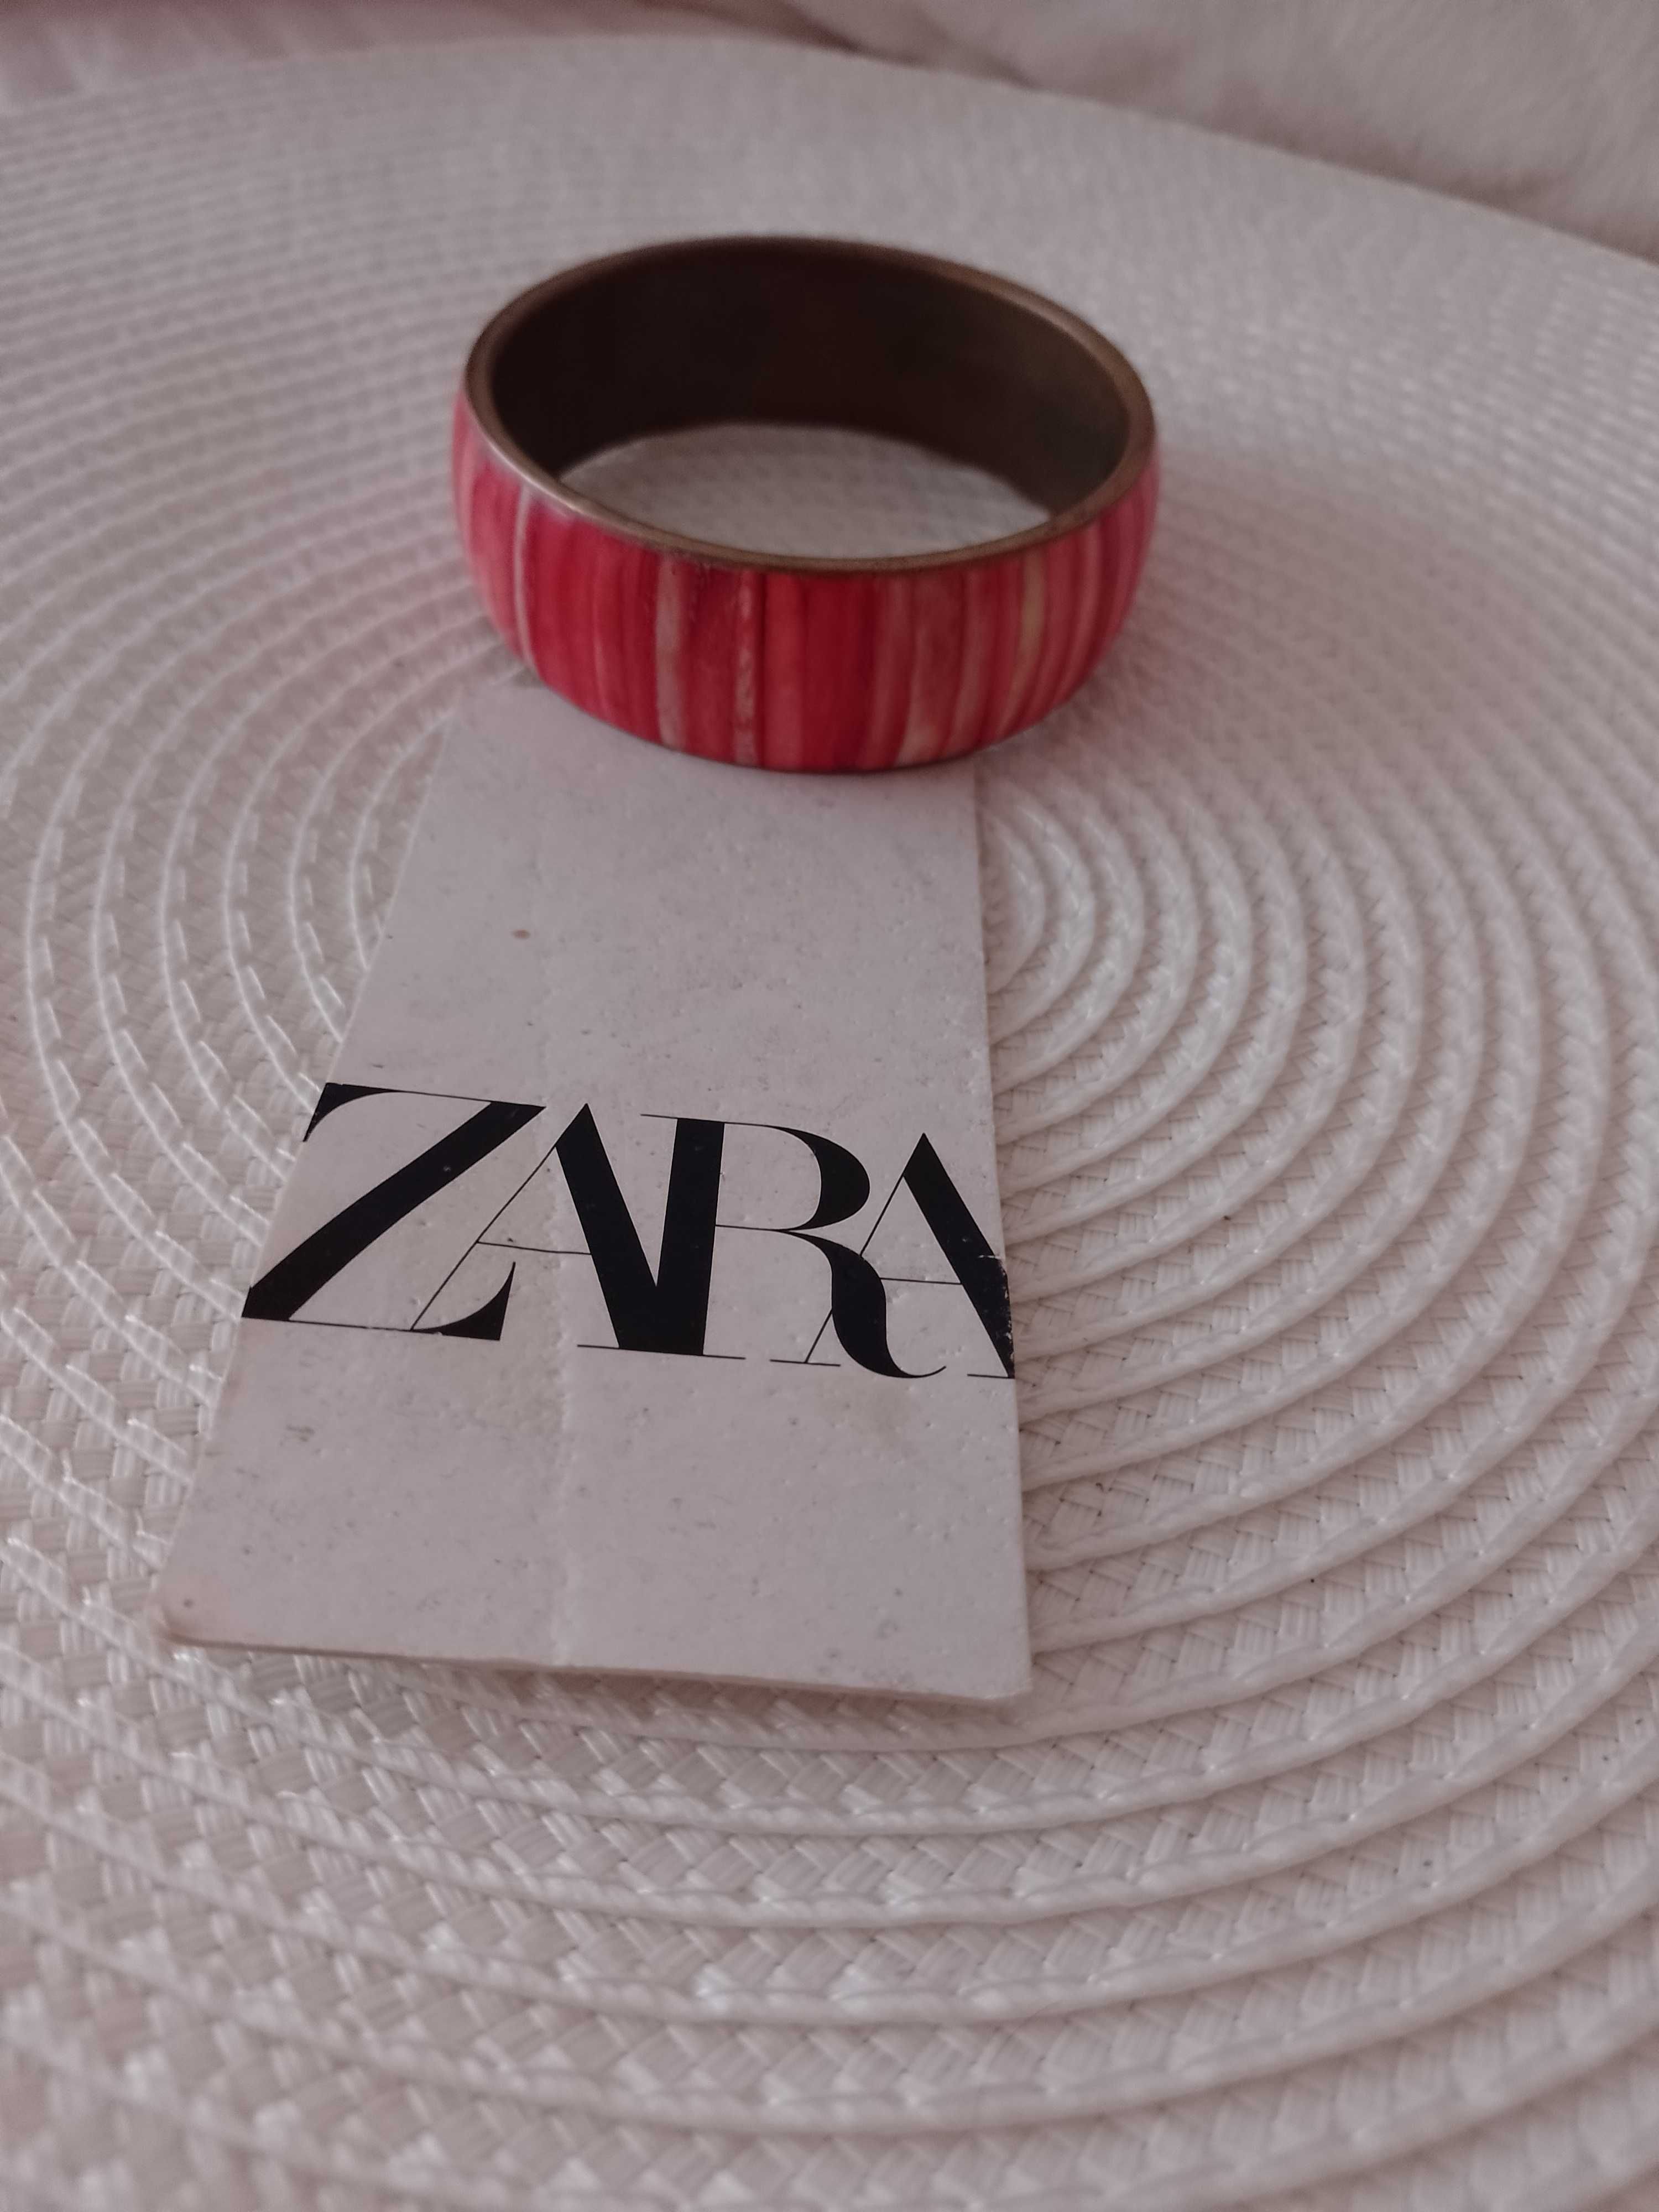 ZARA/ Ekskluzywna bransoletka na rękę z Madrytu